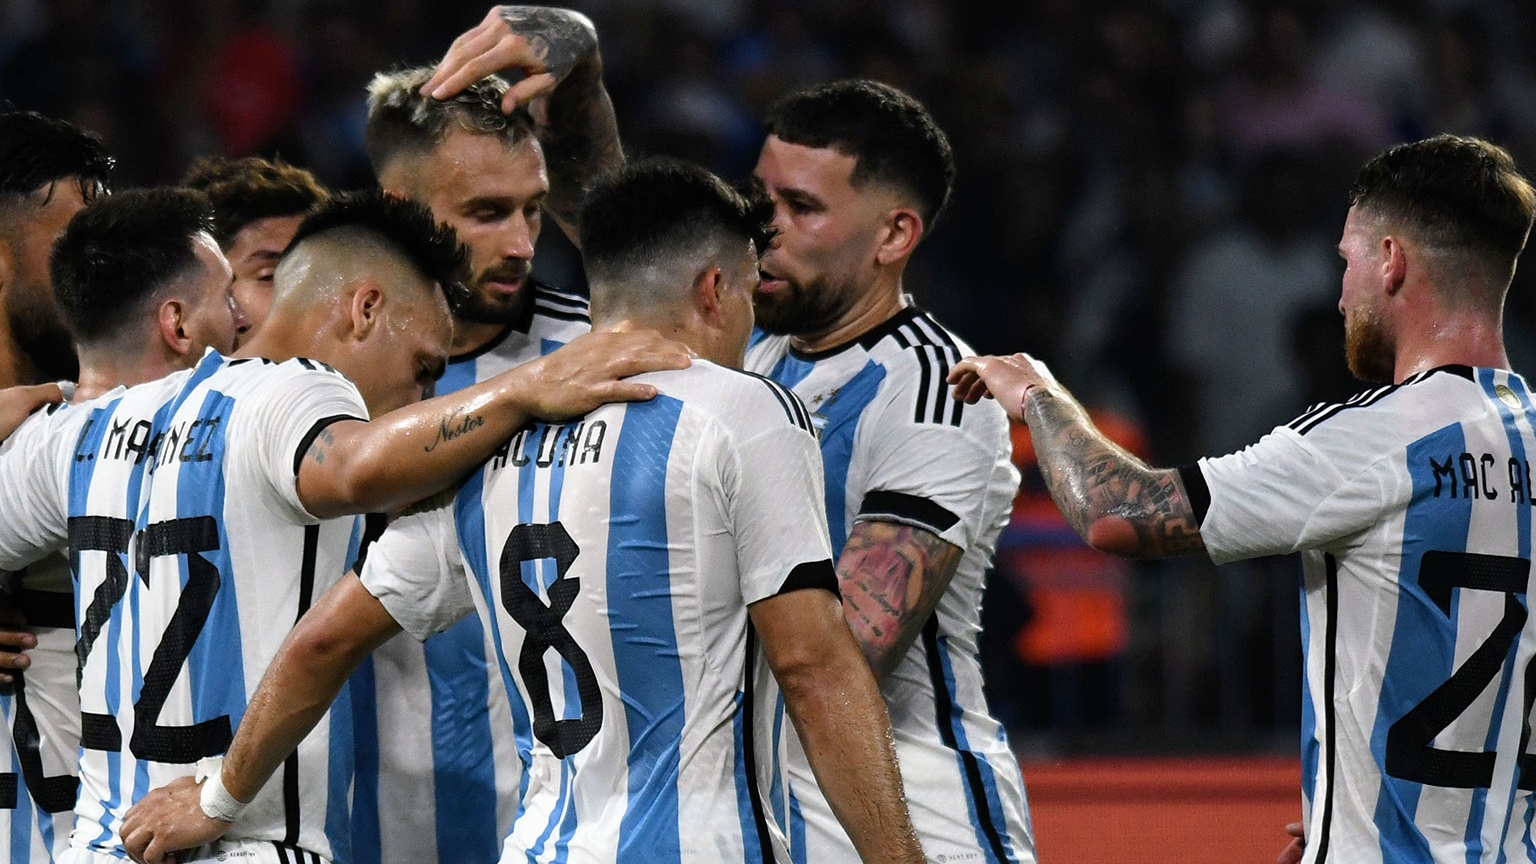 La selección argentina volverá a juntarse en junio (Baires Deportes)